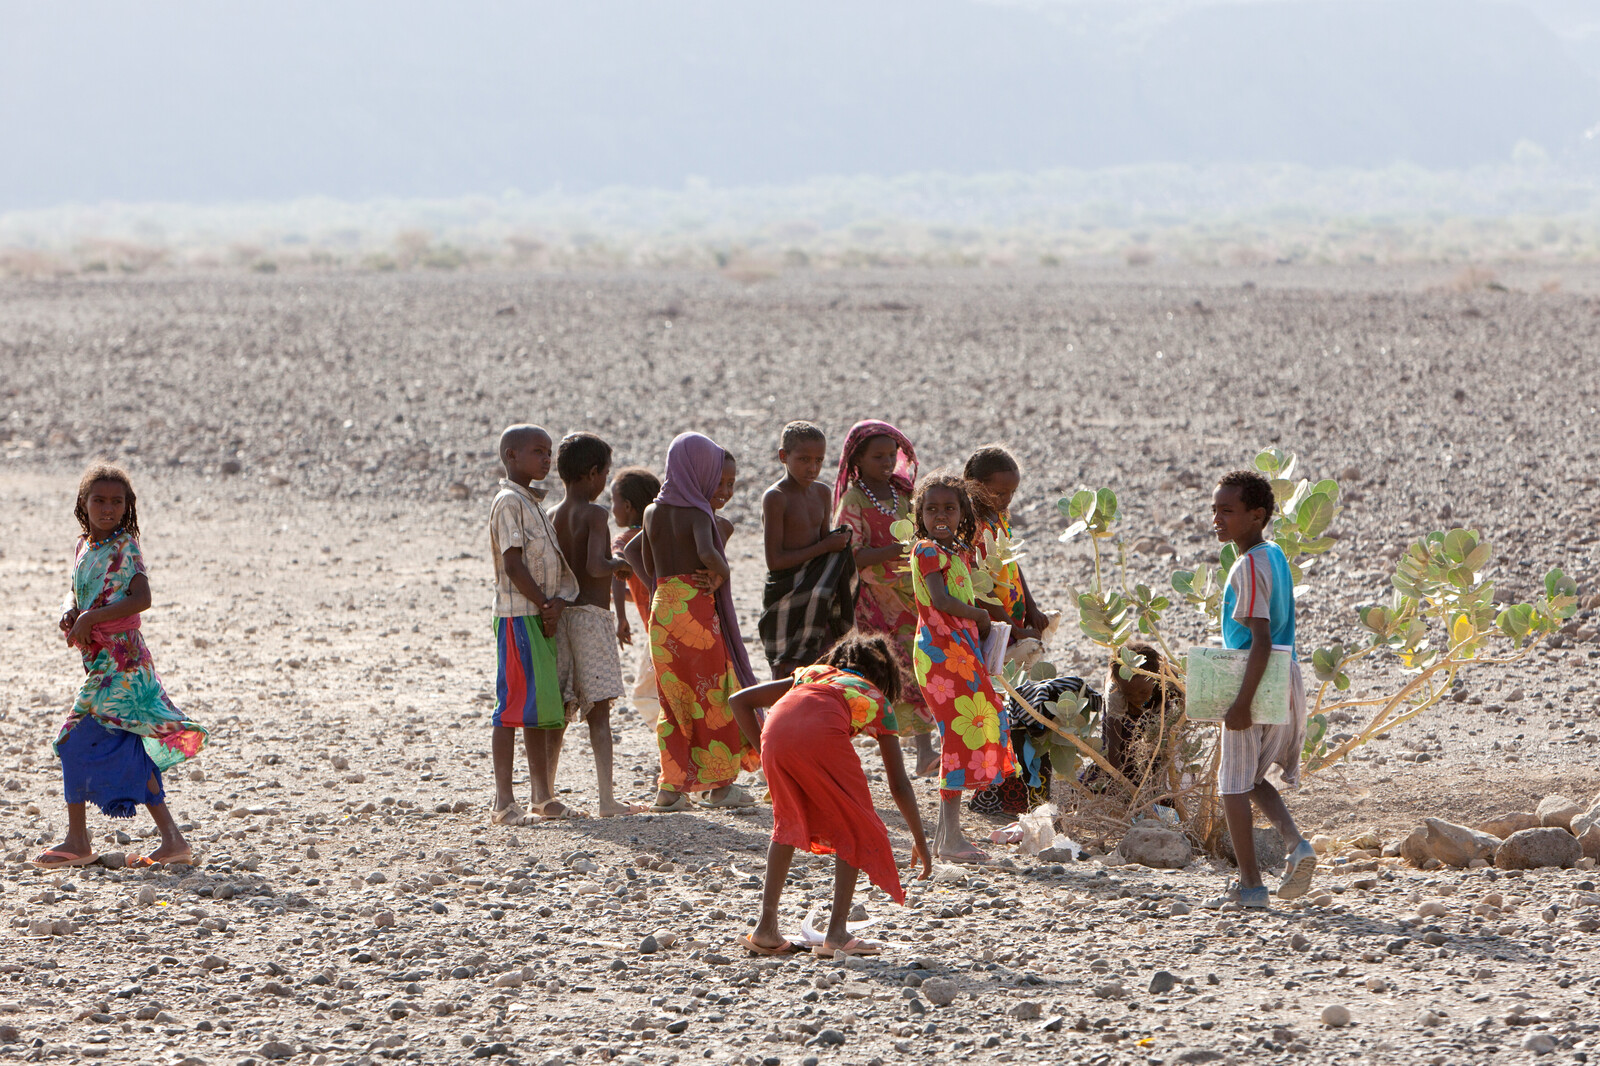 Während einer Dürre in Ostafrika verdorren Weideland und das Vieh stirbt. Daher werden Bäume gepflanzt, um Schatten zu spenden und die Desertifikation zu verlangsamen.